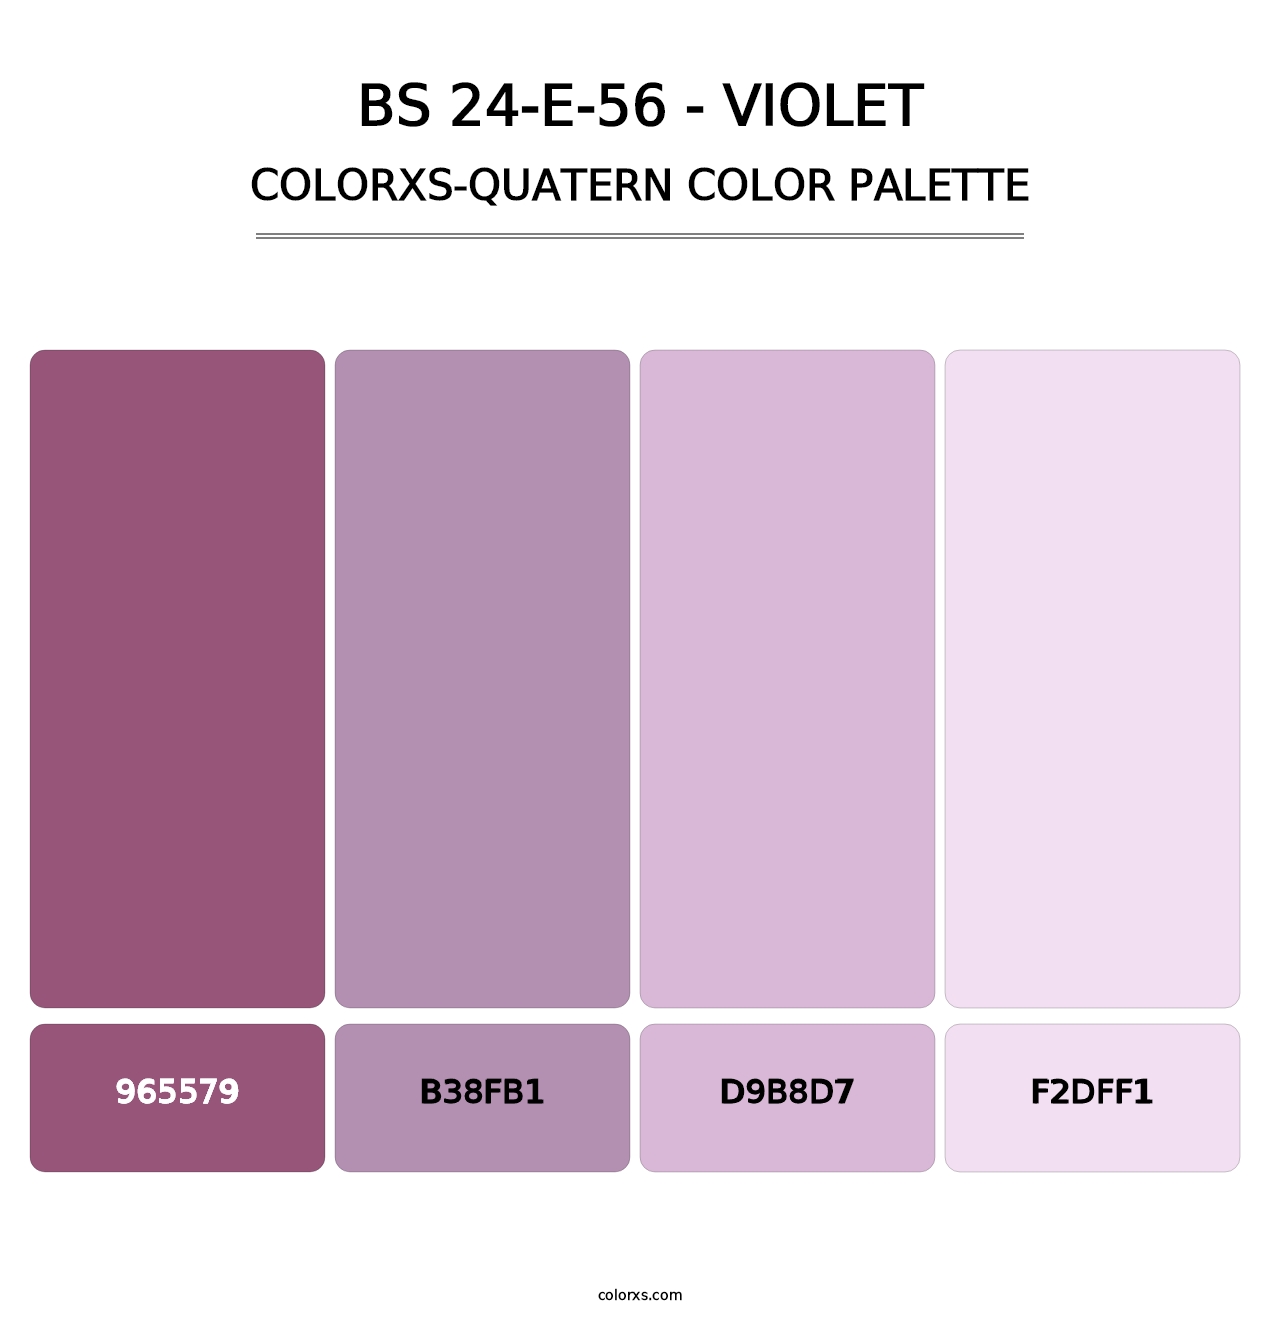 BS 24-E-56 - Violet - Colorxs Quatern Palette